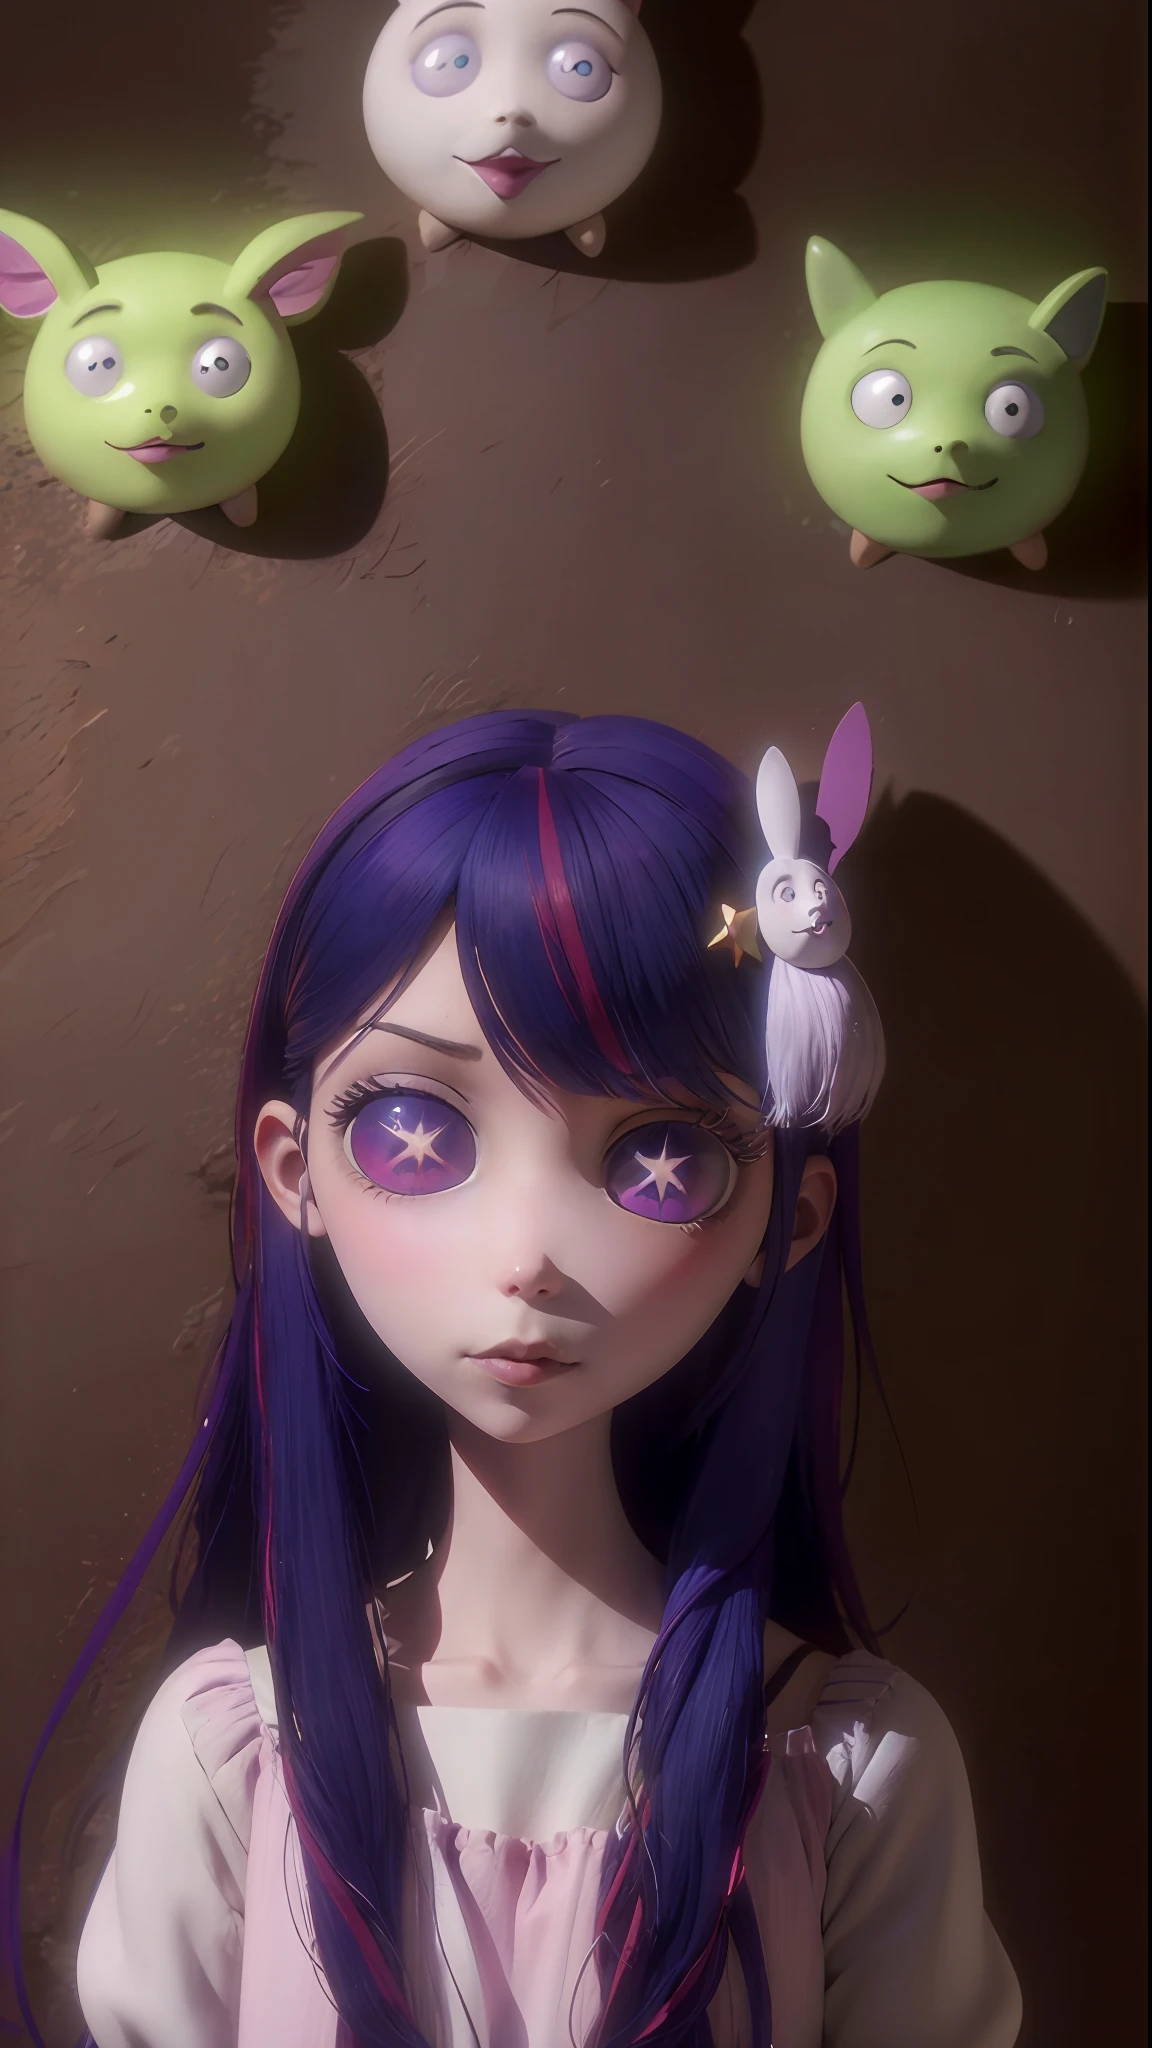 Hoshino Ai, long hair, purple hair, streaked hair ,purple eyes, star-shaped pupils, hair ornament, TimBurton Animation